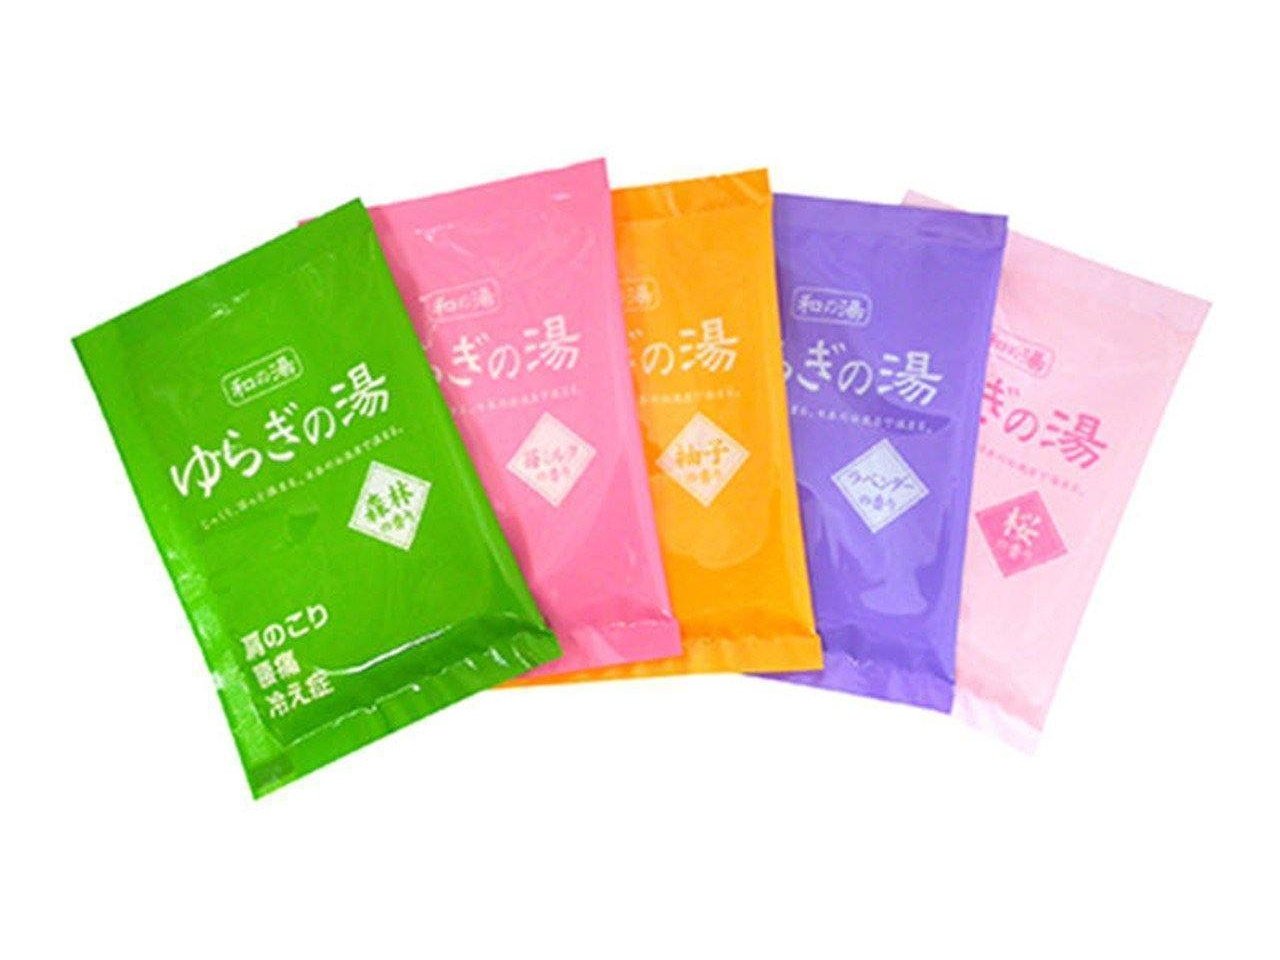 Yuragi no Yu Bath Salts Variety Pack